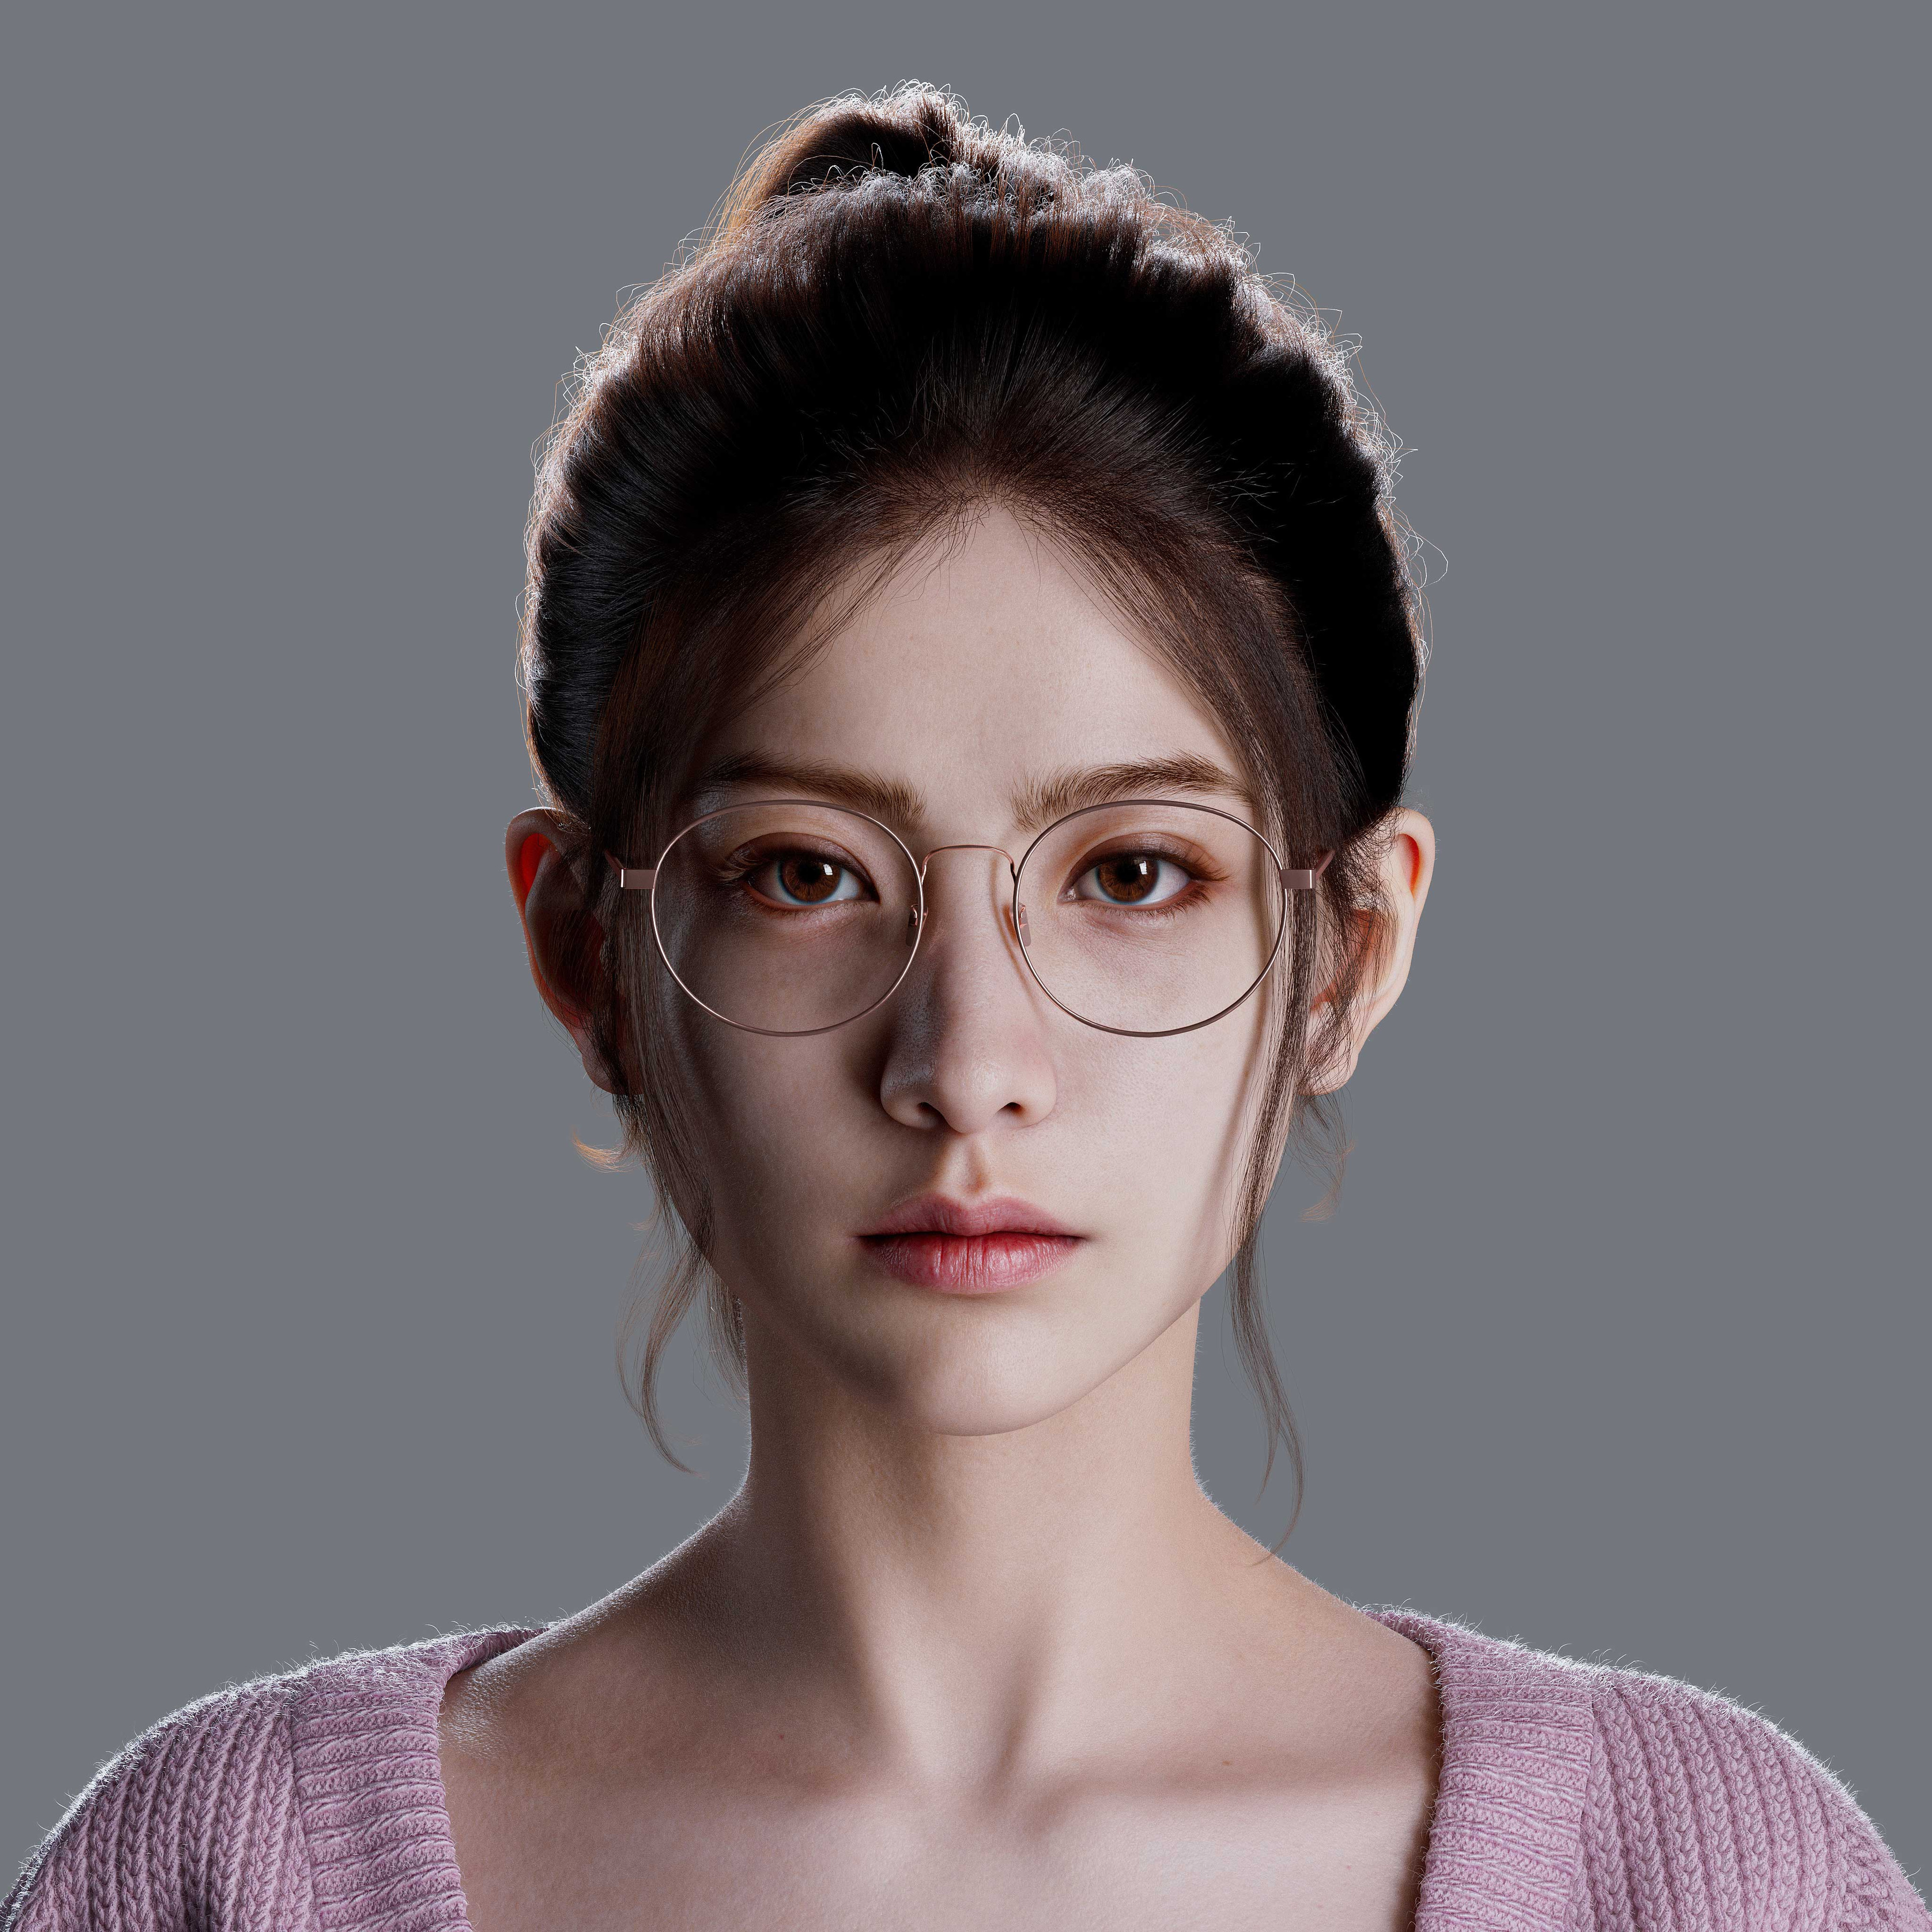 Forever Artist CGi Women Asian Portrait Glasses 3840x3840